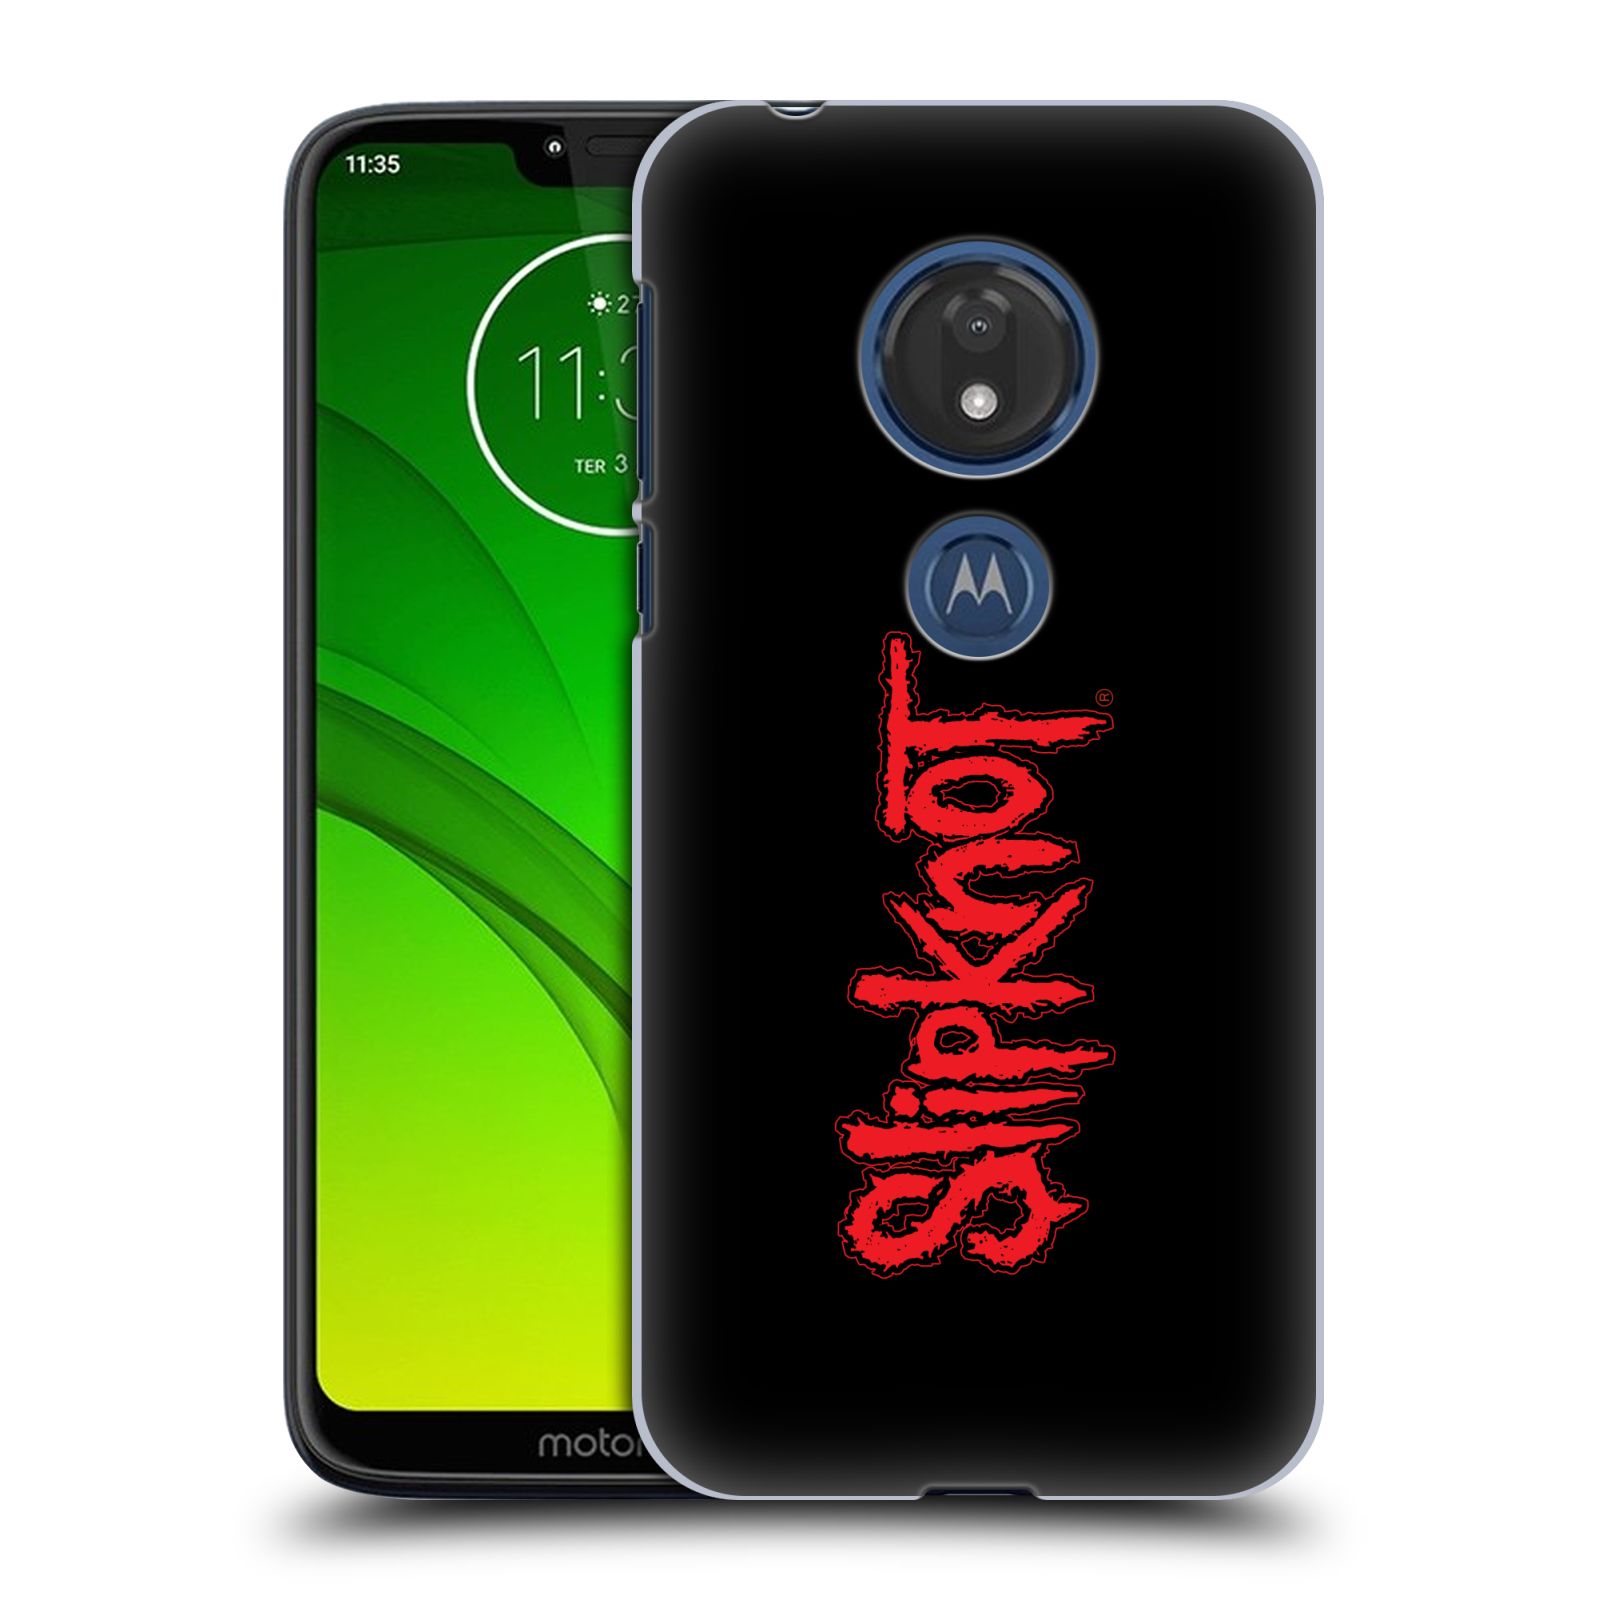 Pouzdro na mobil Motorola Moto G7 Play hudební skupina Slipknot logo velké